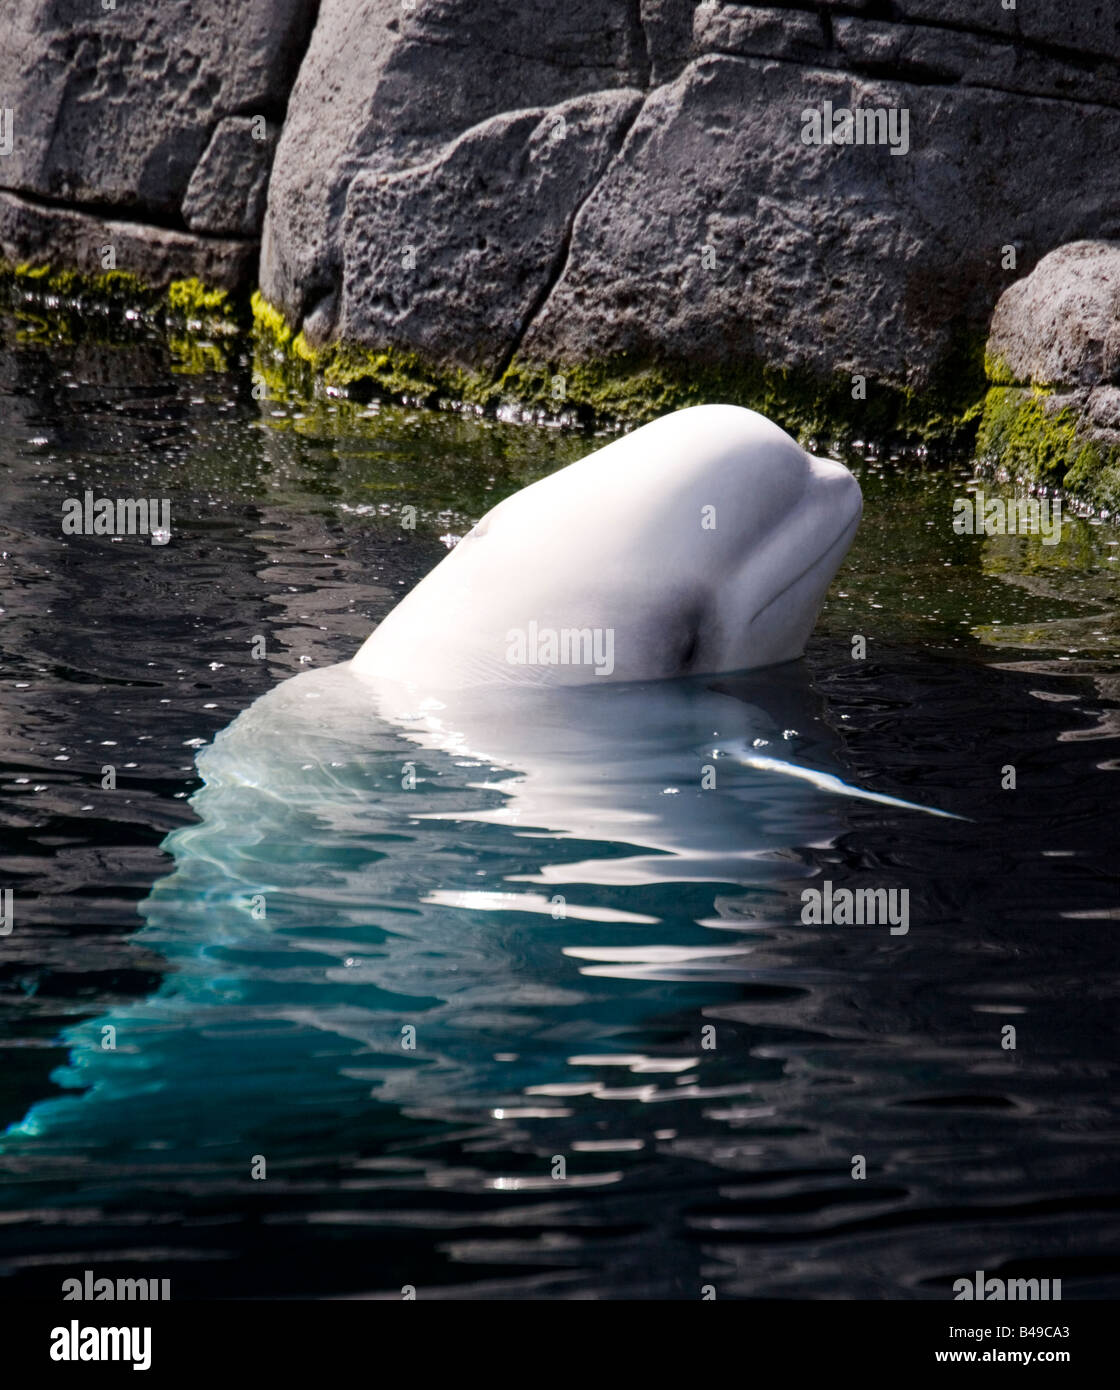 Beluga Whale in Vancouver aquarium, British Columbia, Canada. Stock Photo